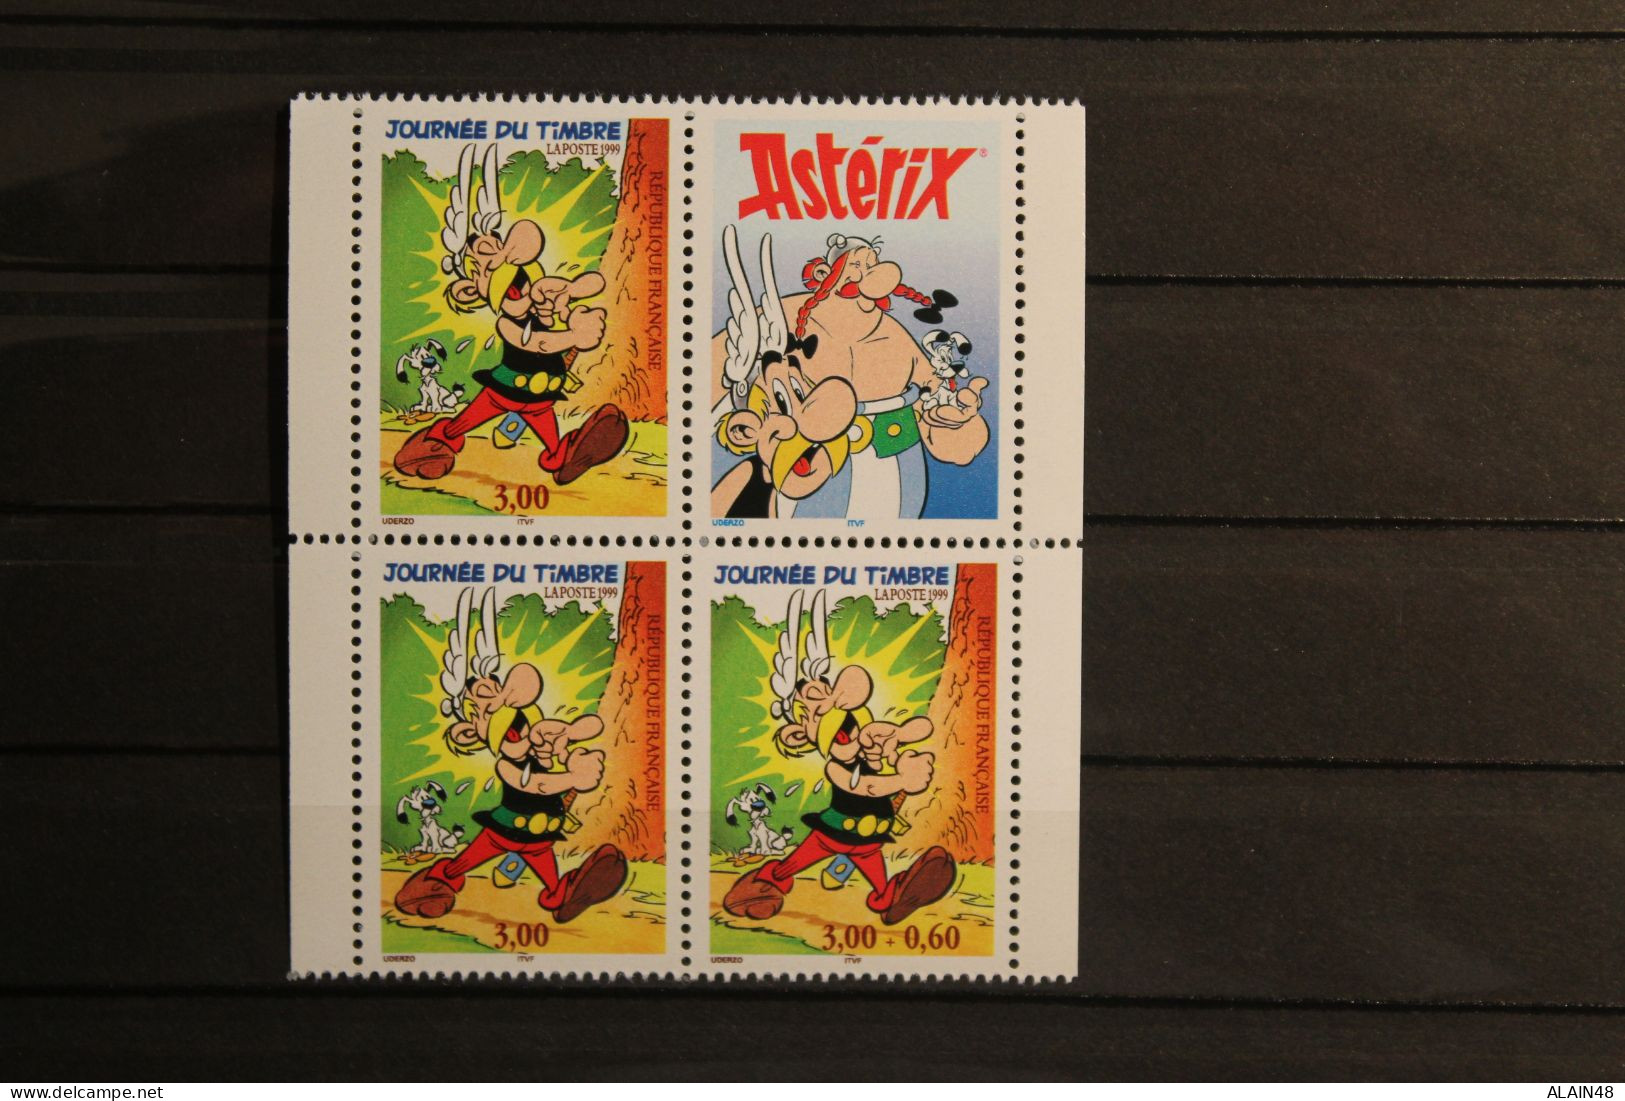 FRANCE 1999 N°3225a + N°3226 + N°3225a Avec Vignette Haut Du Carnet JOURNEE  DU TIMBRE ASTERIX NEUF** TB - Unused Stamps